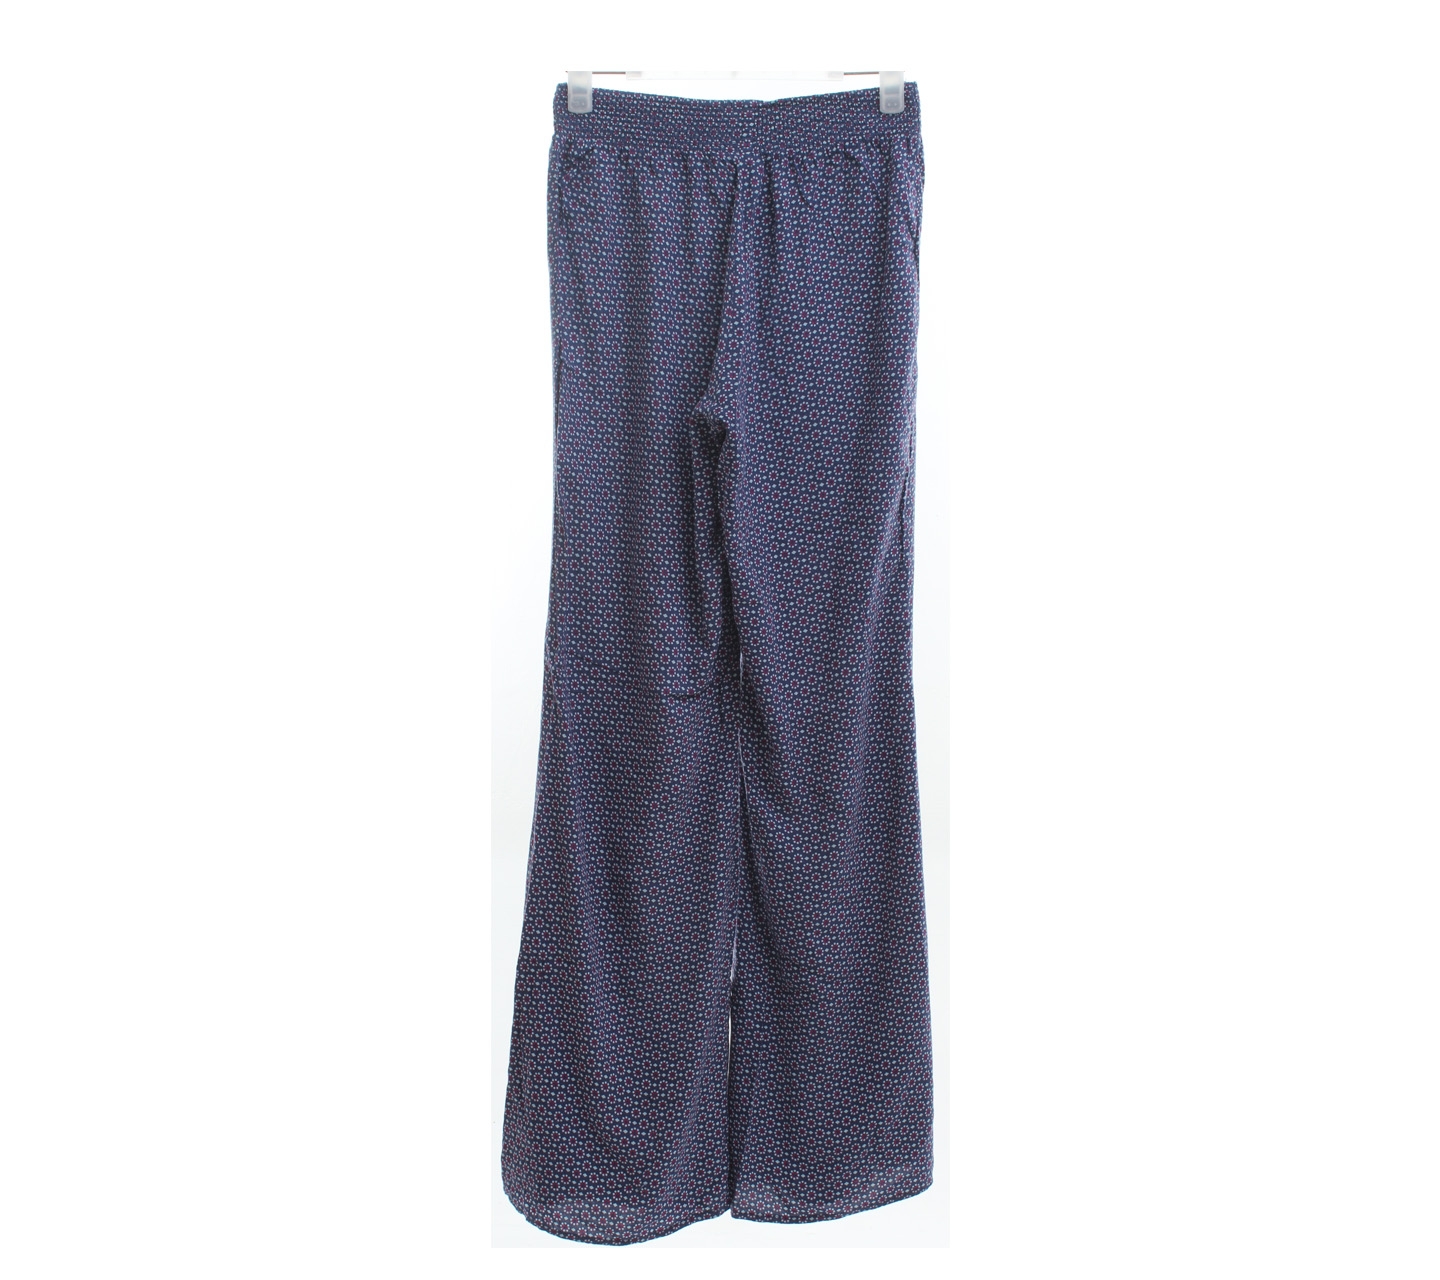 H&M Dark Blue Floral Long Pants